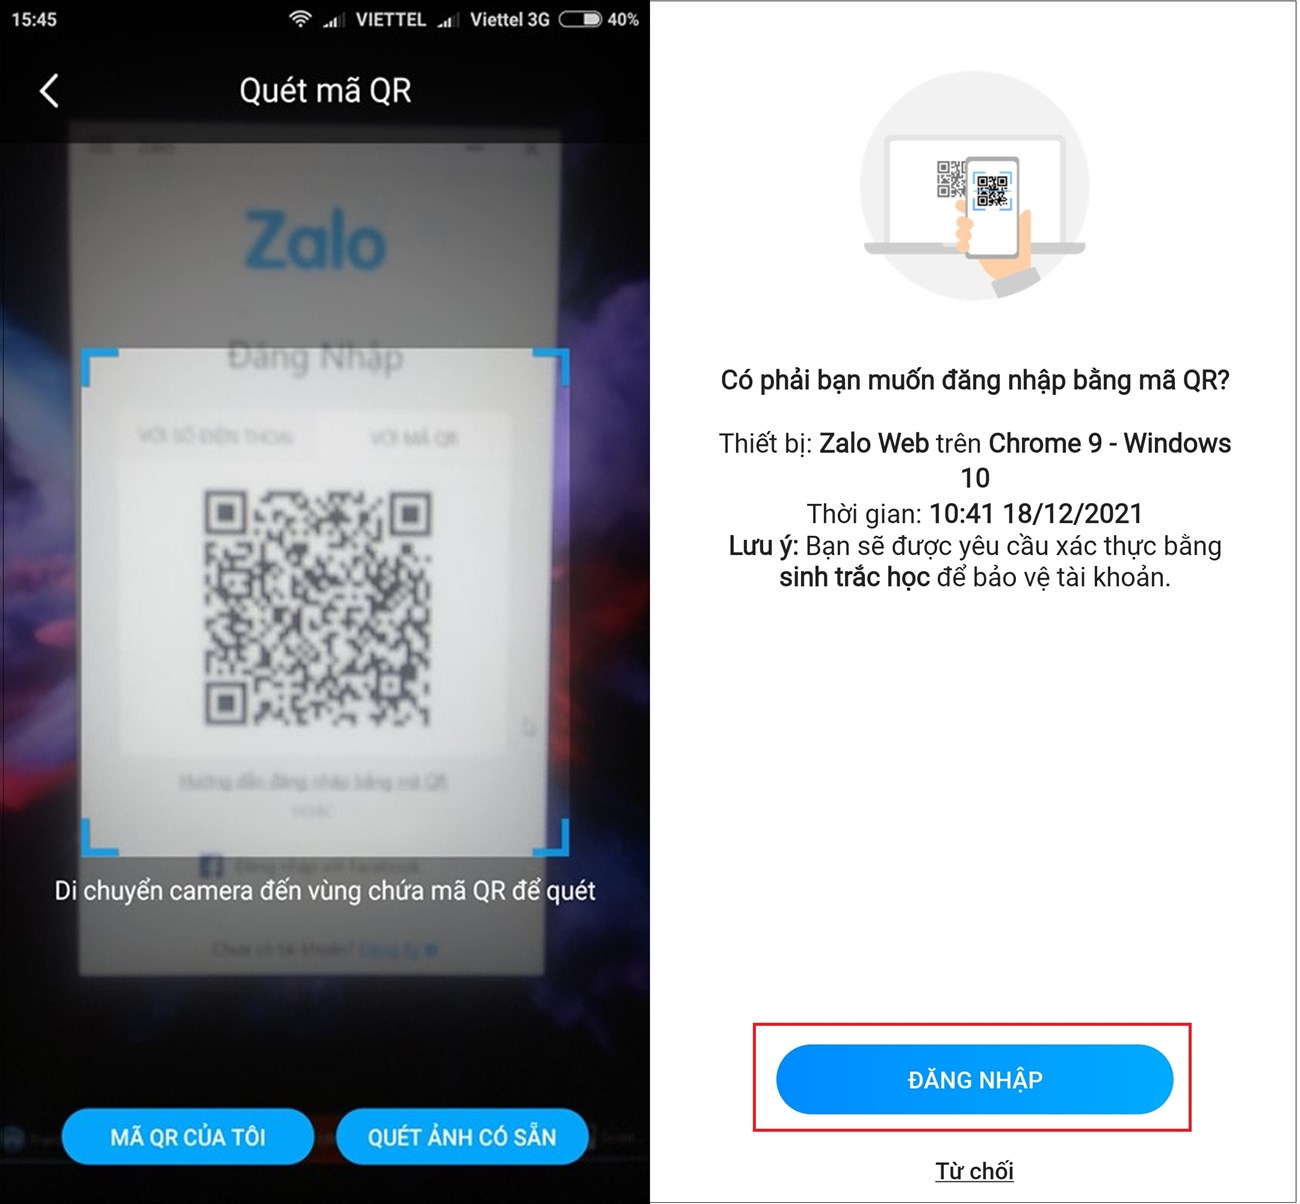 Bước 1: Mở ứng dụng Zalo trên điện thoại > Chọn ví QR ở góc bên phải phía trên màn hình chính” src=”https://cdn.tgdd.vn/Files/2018/02/07/1065292/huong-dan-cach-cai-dat-zalo-dang-nhap-zalo-tren-ma-4.jpg” title=”Bước 1: Mở ứng dụng Zalo trên điện thoại > Chọn ví QR ở góc bên phải phía trên màn hình chính”/></p>
<p><strong>Bước 2: </strong>Chọn quét mã QR và đưa điện thoại lại gần với mã QR đang hiển thị trên máy tính để tiến hành quét mã. Sau đó, bấm chấp nhận để đăng nhập vào máy tính của bạn.</p>
<p><img alt=